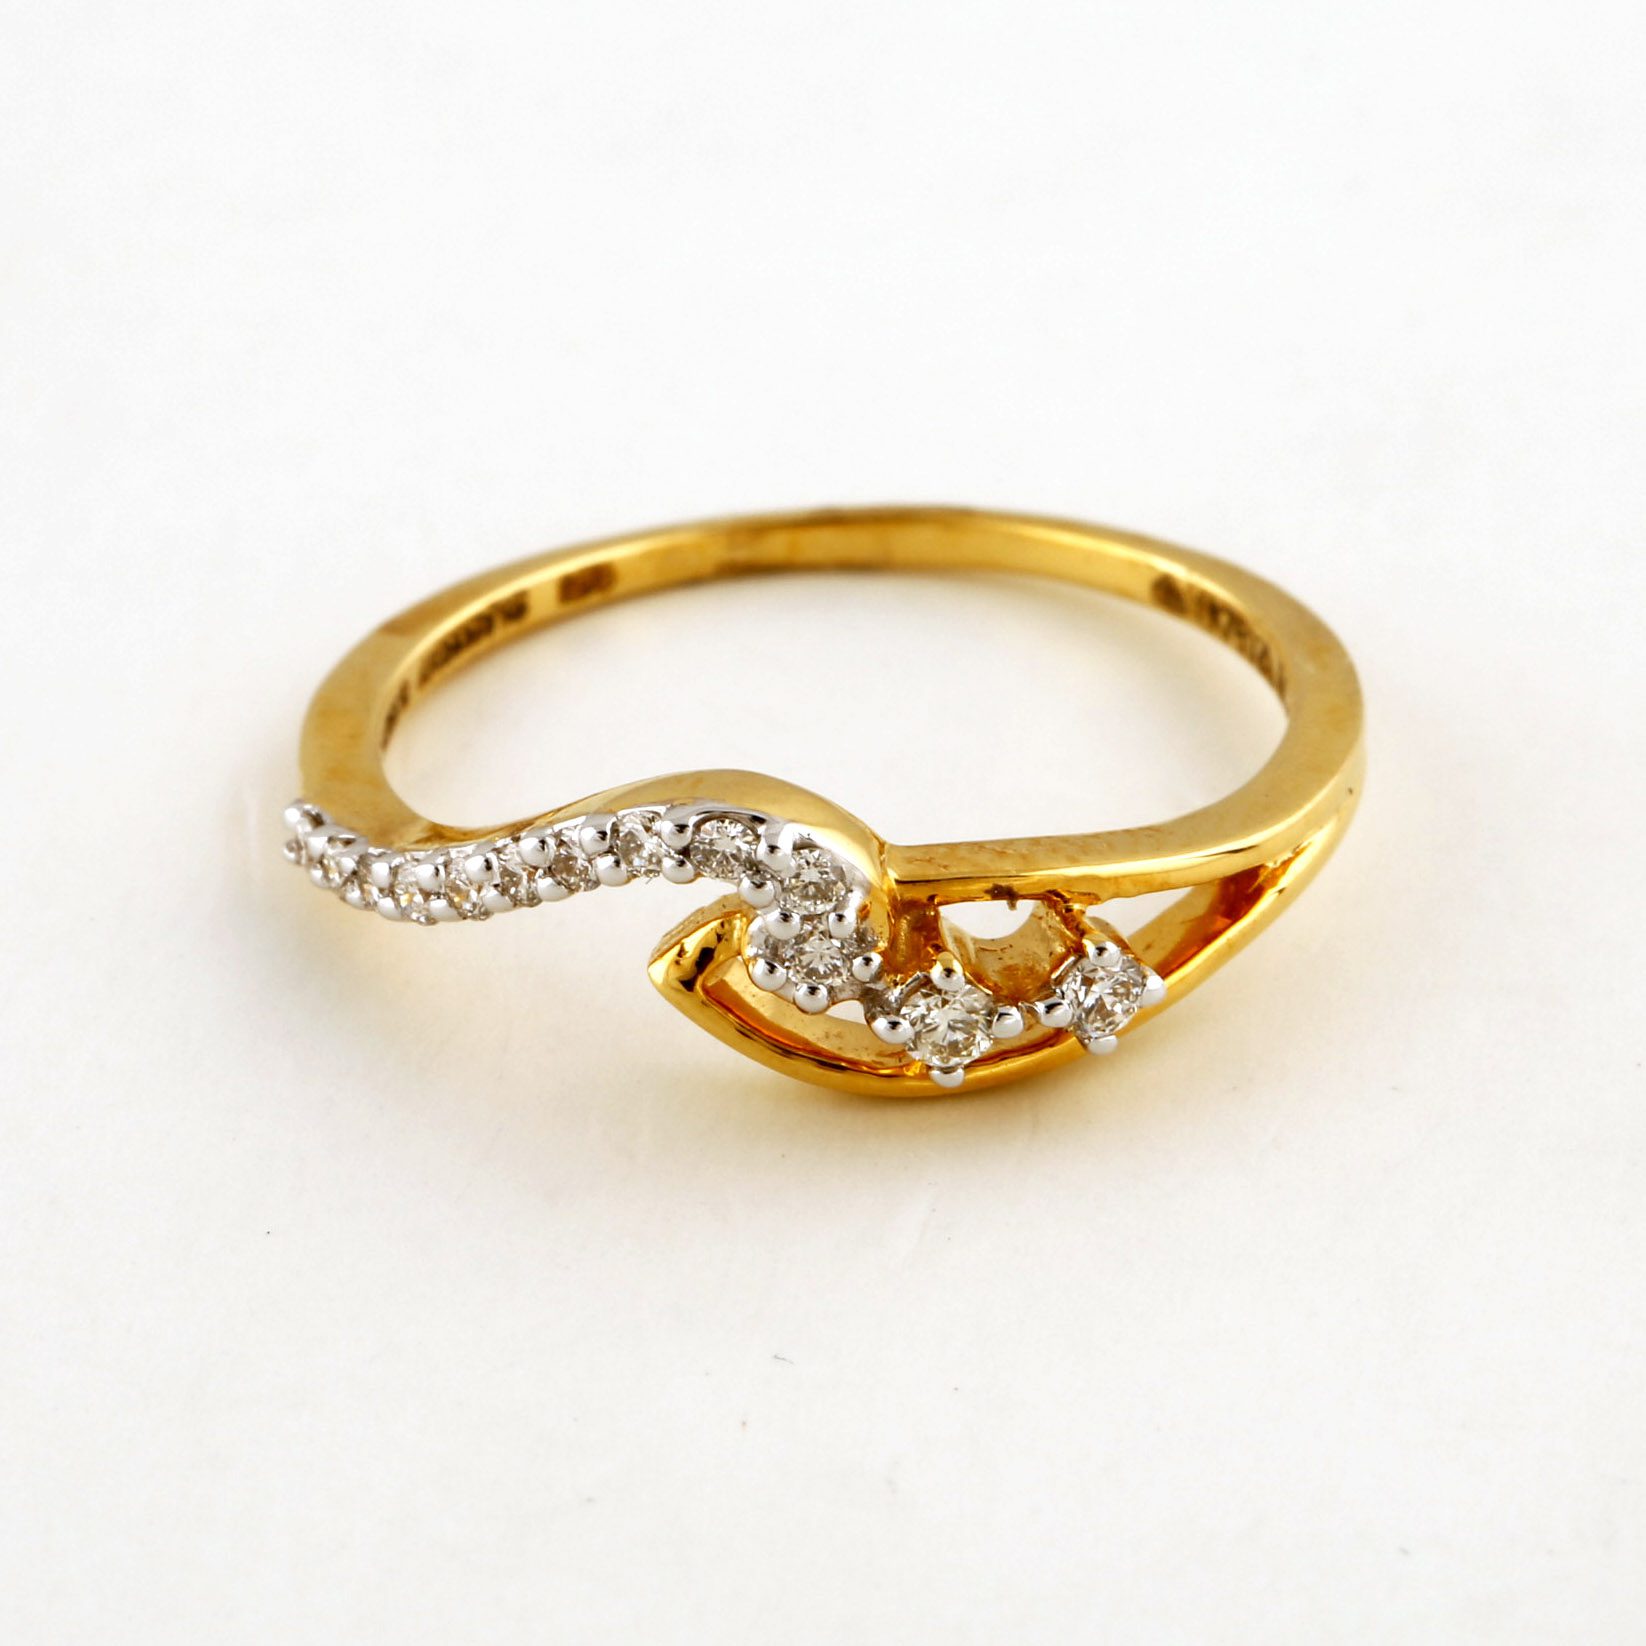 লম্বা আংটির ডিজাইনGold Long Ring Designs#gold_manik_oficial #gold_desi... |  TikTok